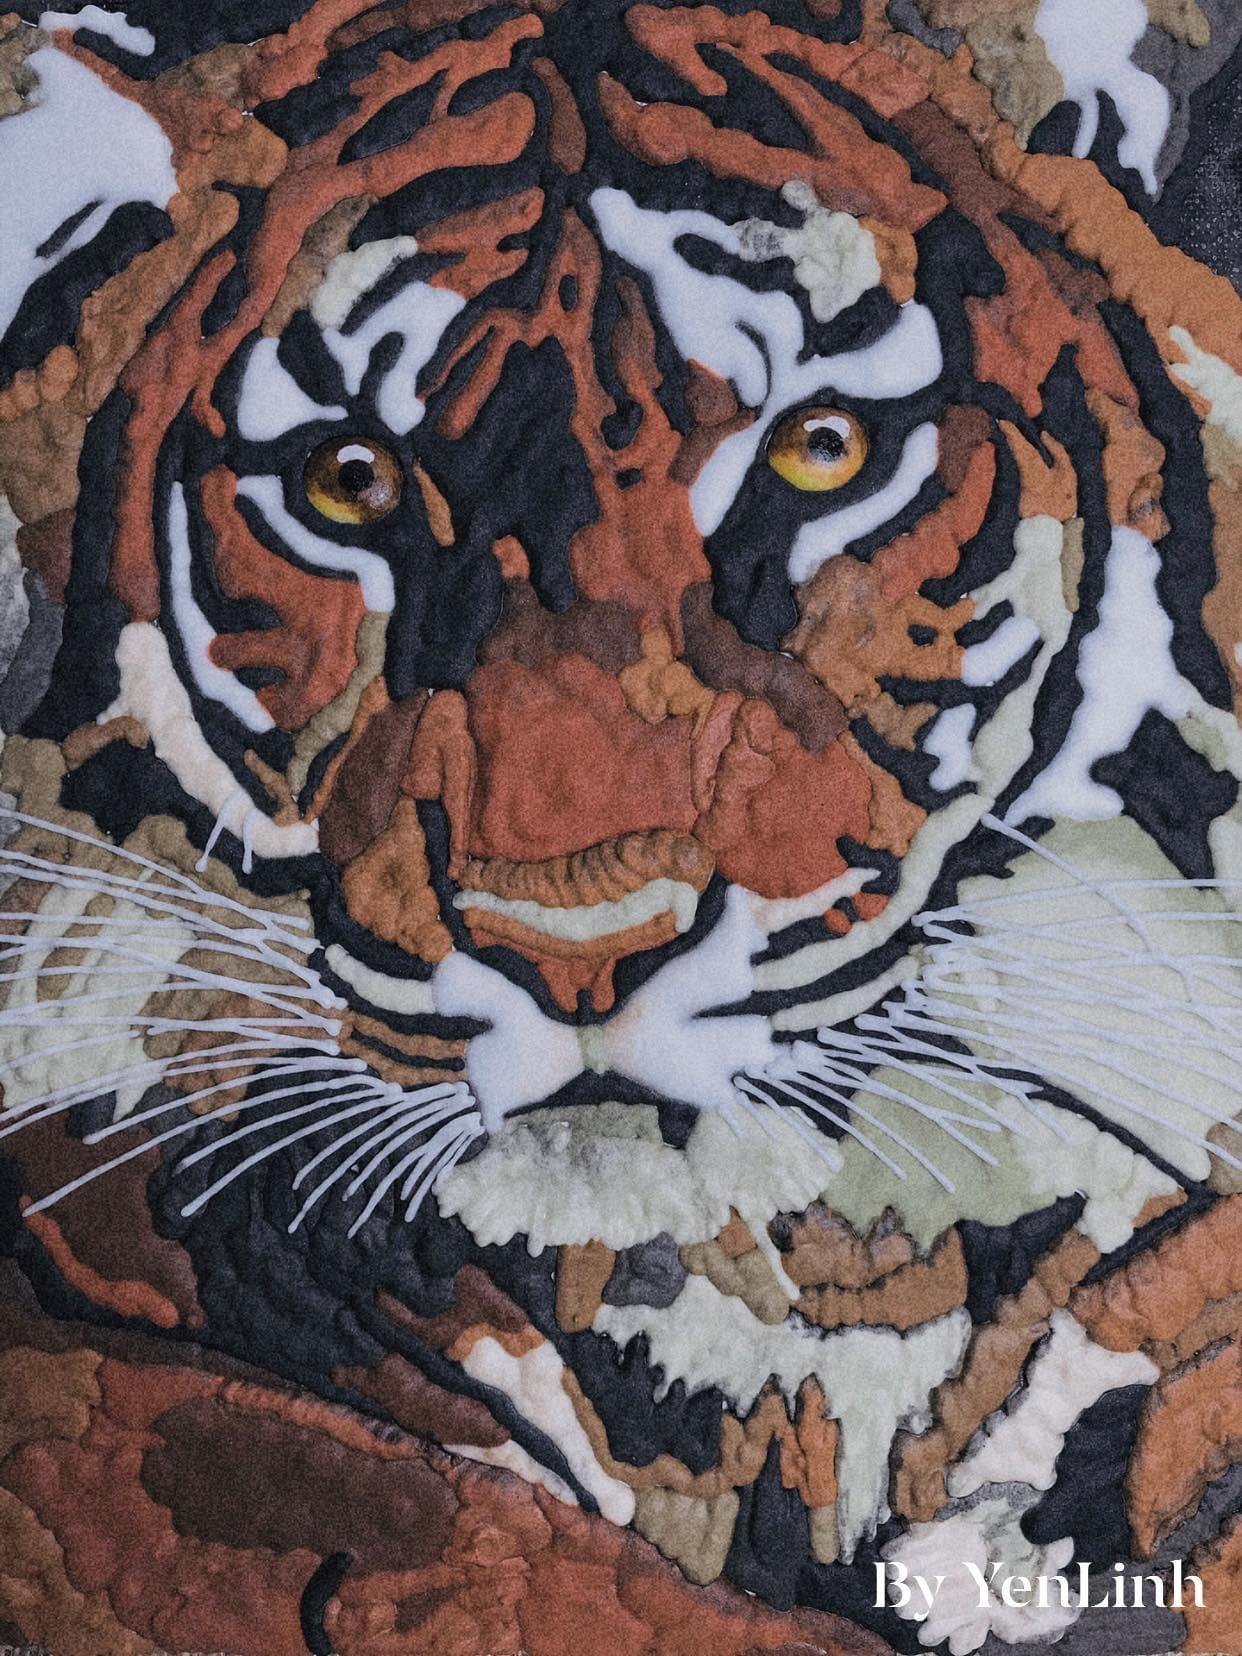 Xem hơn 100 ảnh về cute hình vẽ con hổ dễ thương  NEC